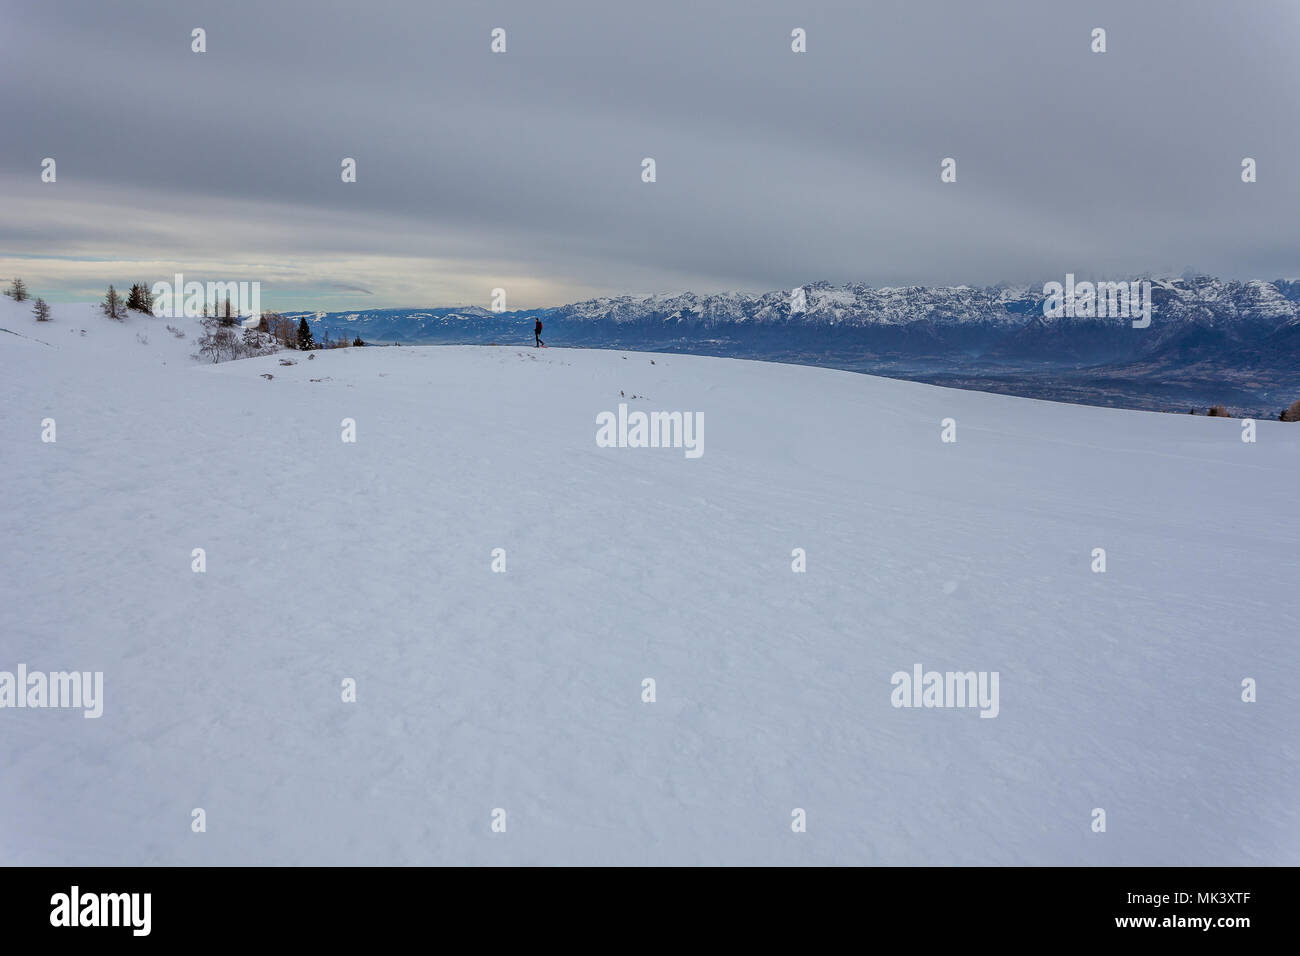 Homme marchant sur la neige, avec les sommets des Dolomites en arrière-plan, le Col Visentin, Padova, Italie Banque D'Images